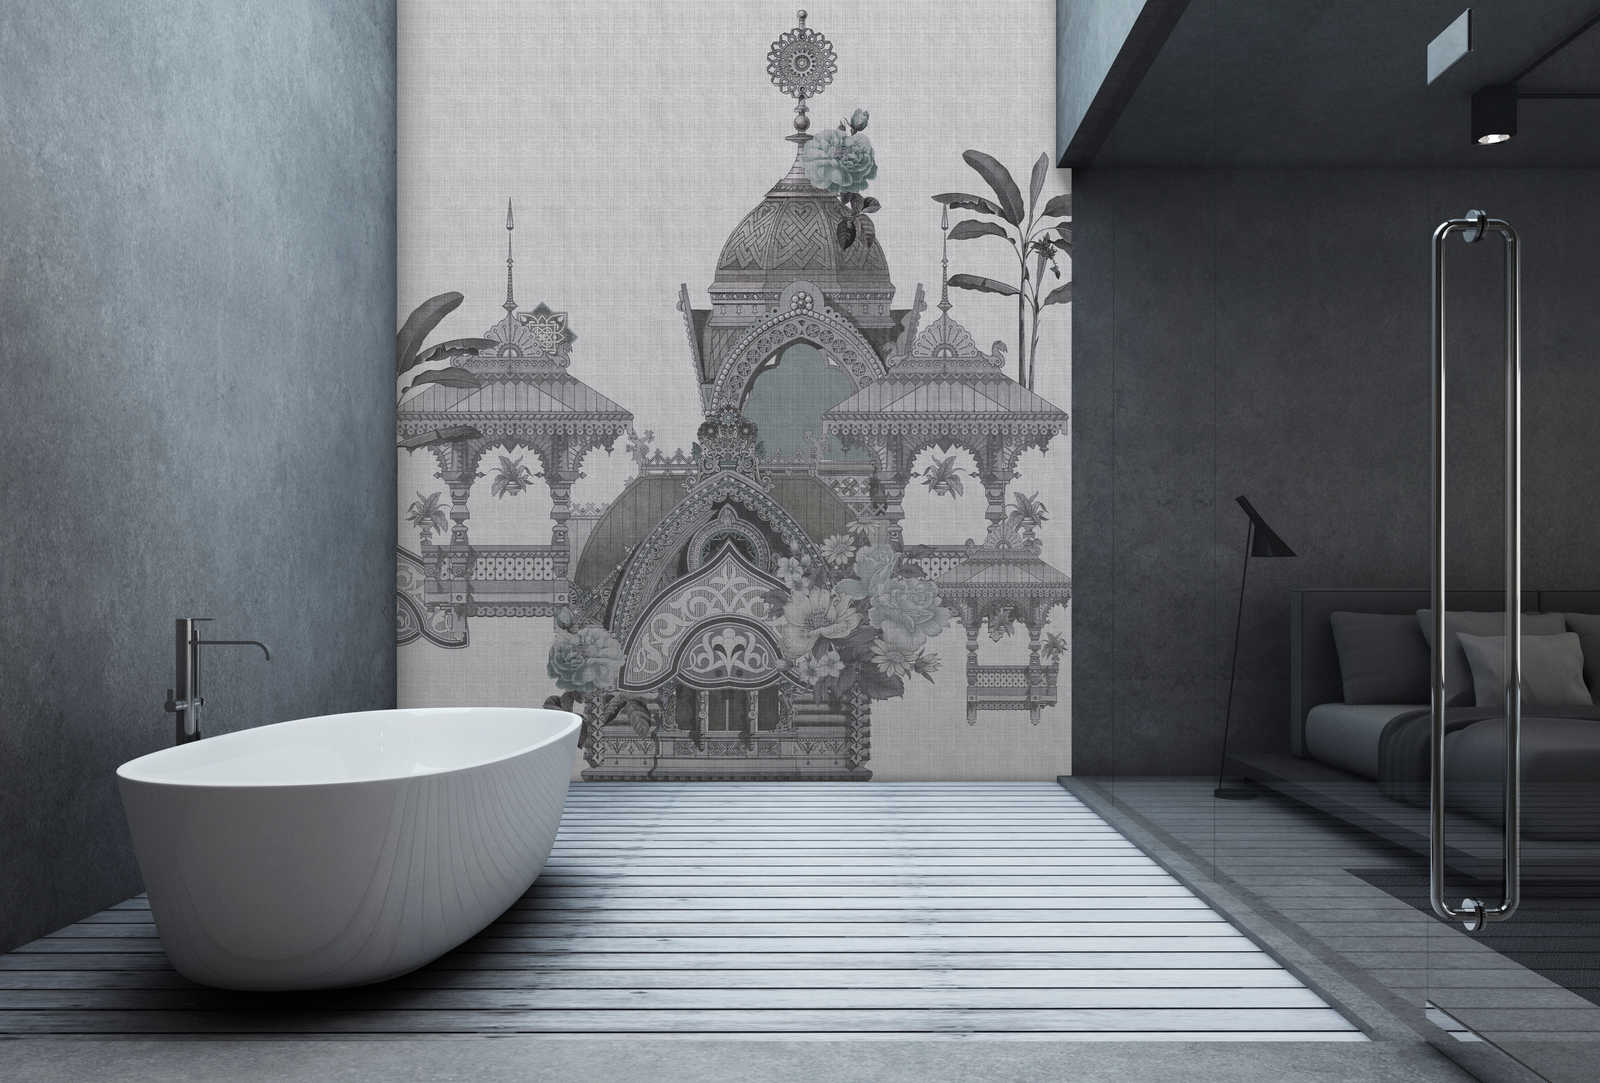             Jaipur 3 - Papier peint panoramique Inde décor fleurs & architecture
        